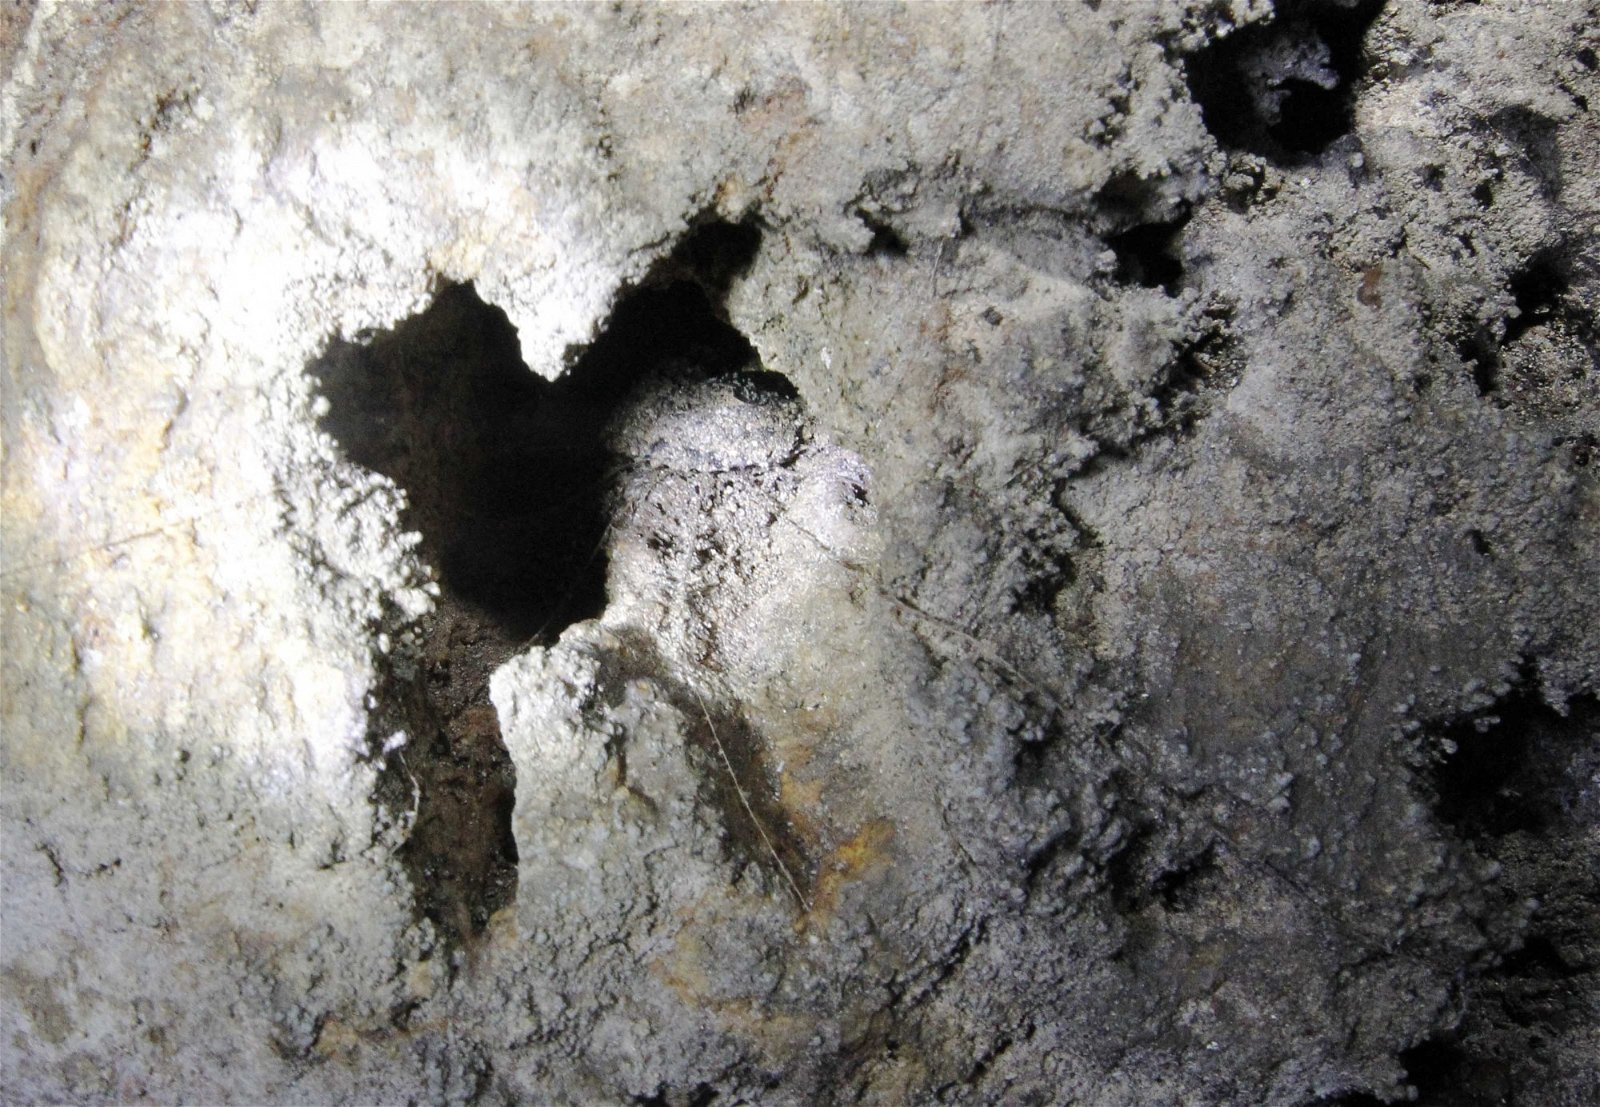 拱桥山洞内不难发现活板门蜘蛛筑巢的洞穴，一旦有猎物经过，活板门蜘蛛将迅速展开捕食行动。